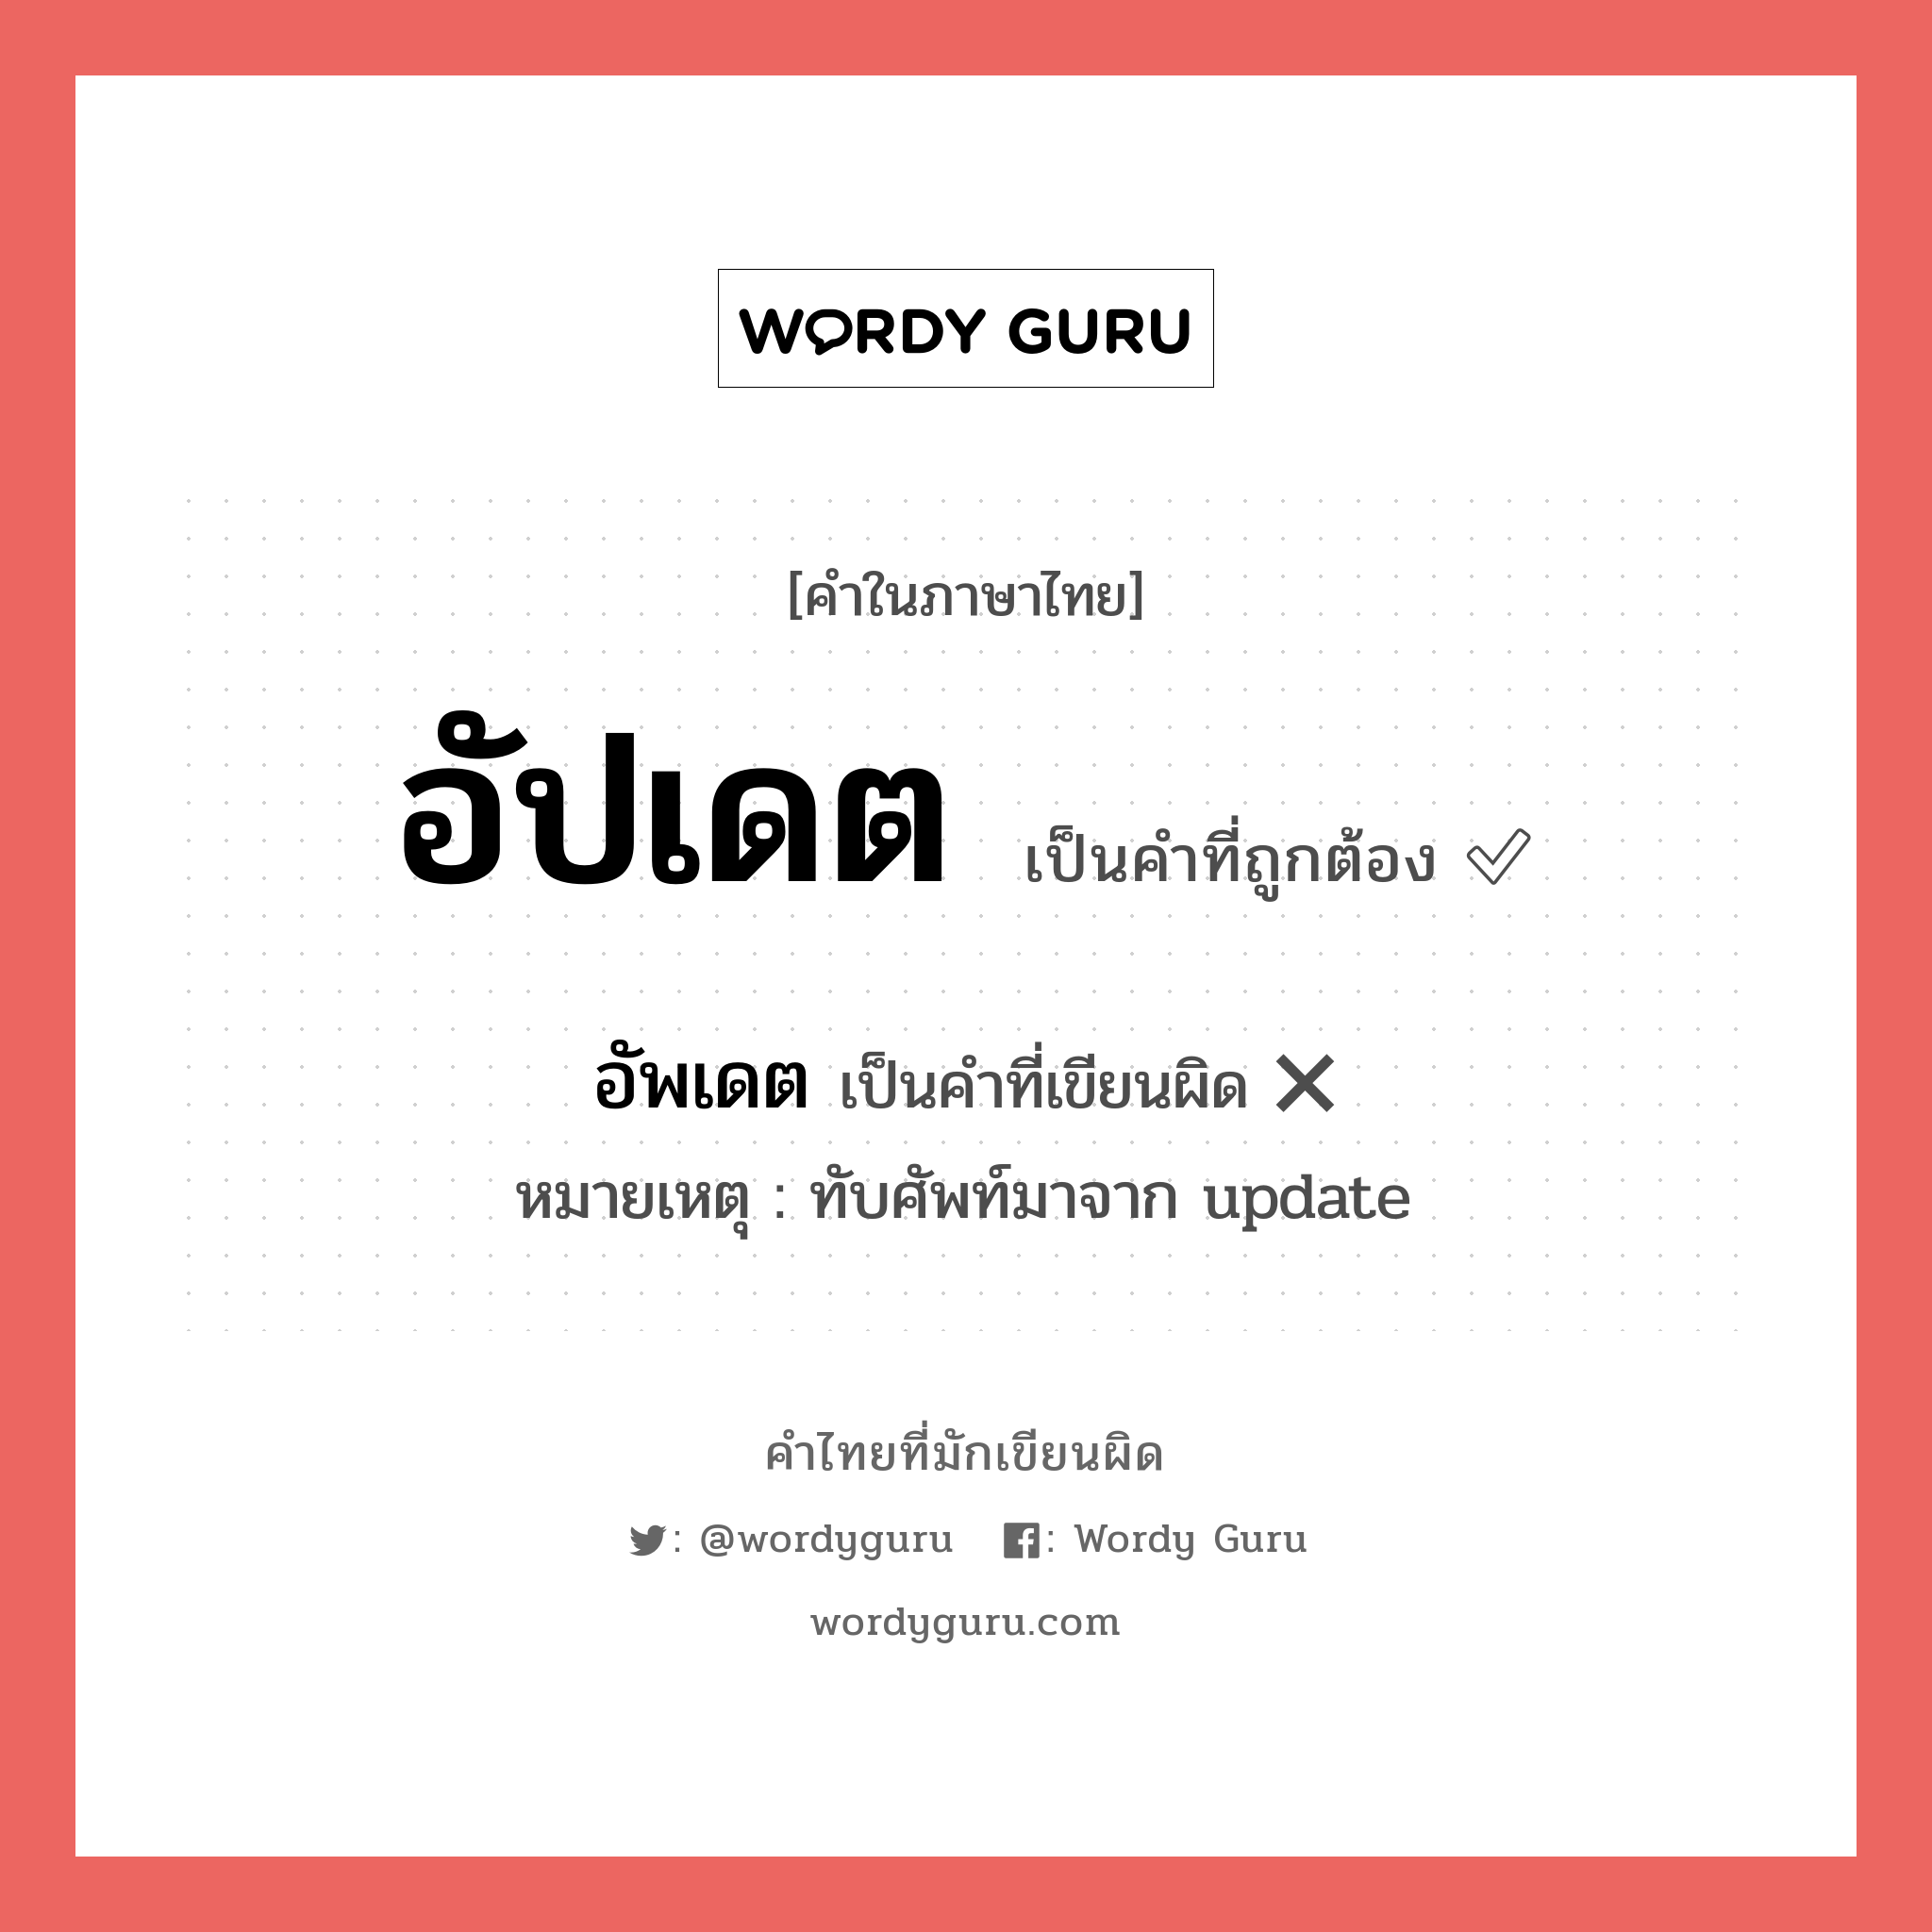 อัปเดต หรือ อัพเดท คำไหนเขียนถูก?, คำในภาษาไทยที่มักเขียนผิด อัปเดต คำที่ผิด ❌ อัพเดต หมายเหตุ ทับศัพท์มาจาก update